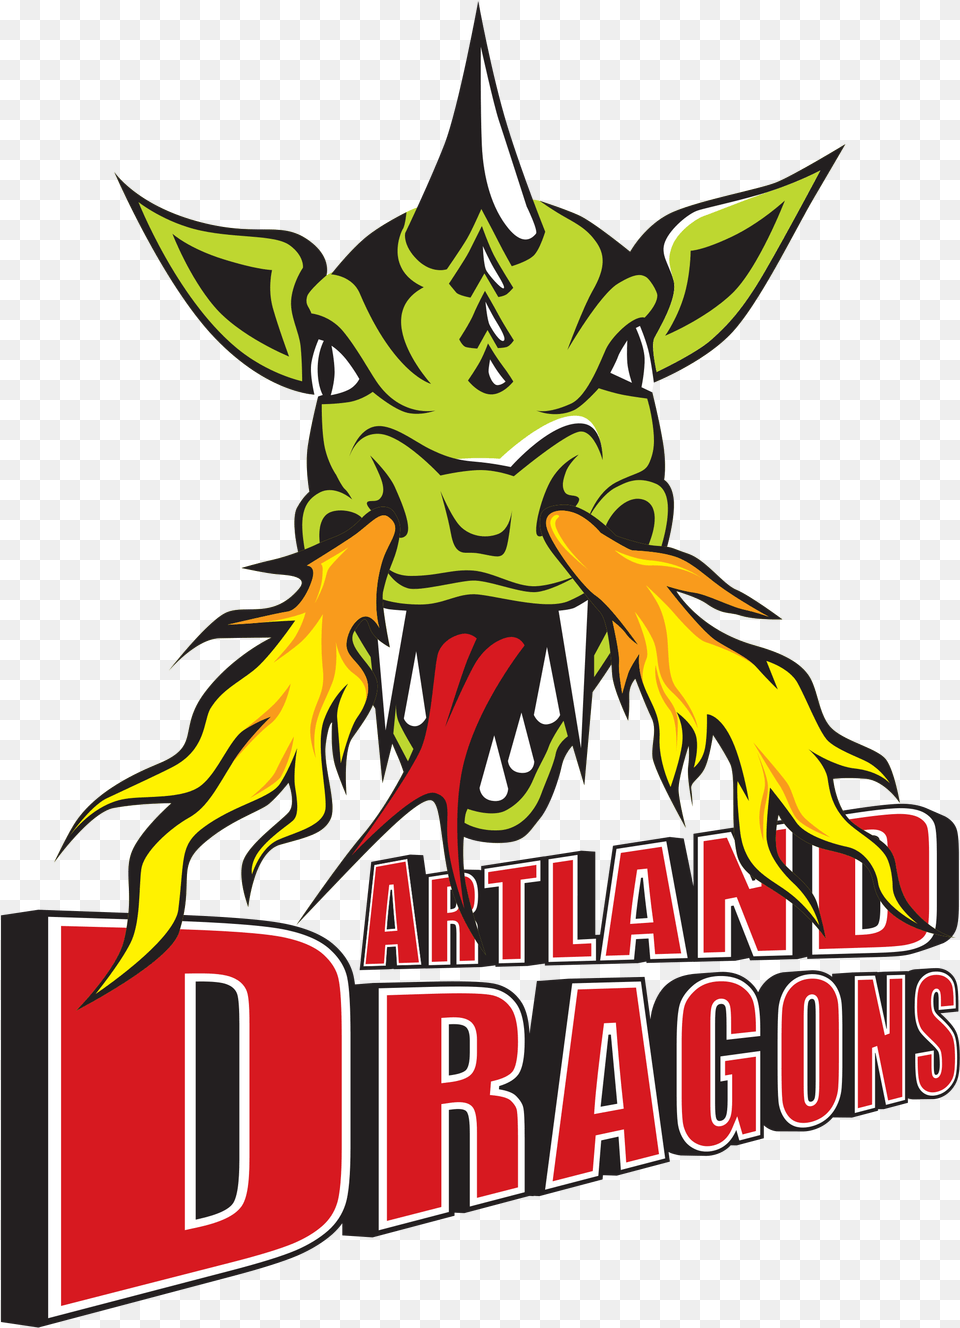 Artland Dragons Logo, Dynamite, Weapon Png